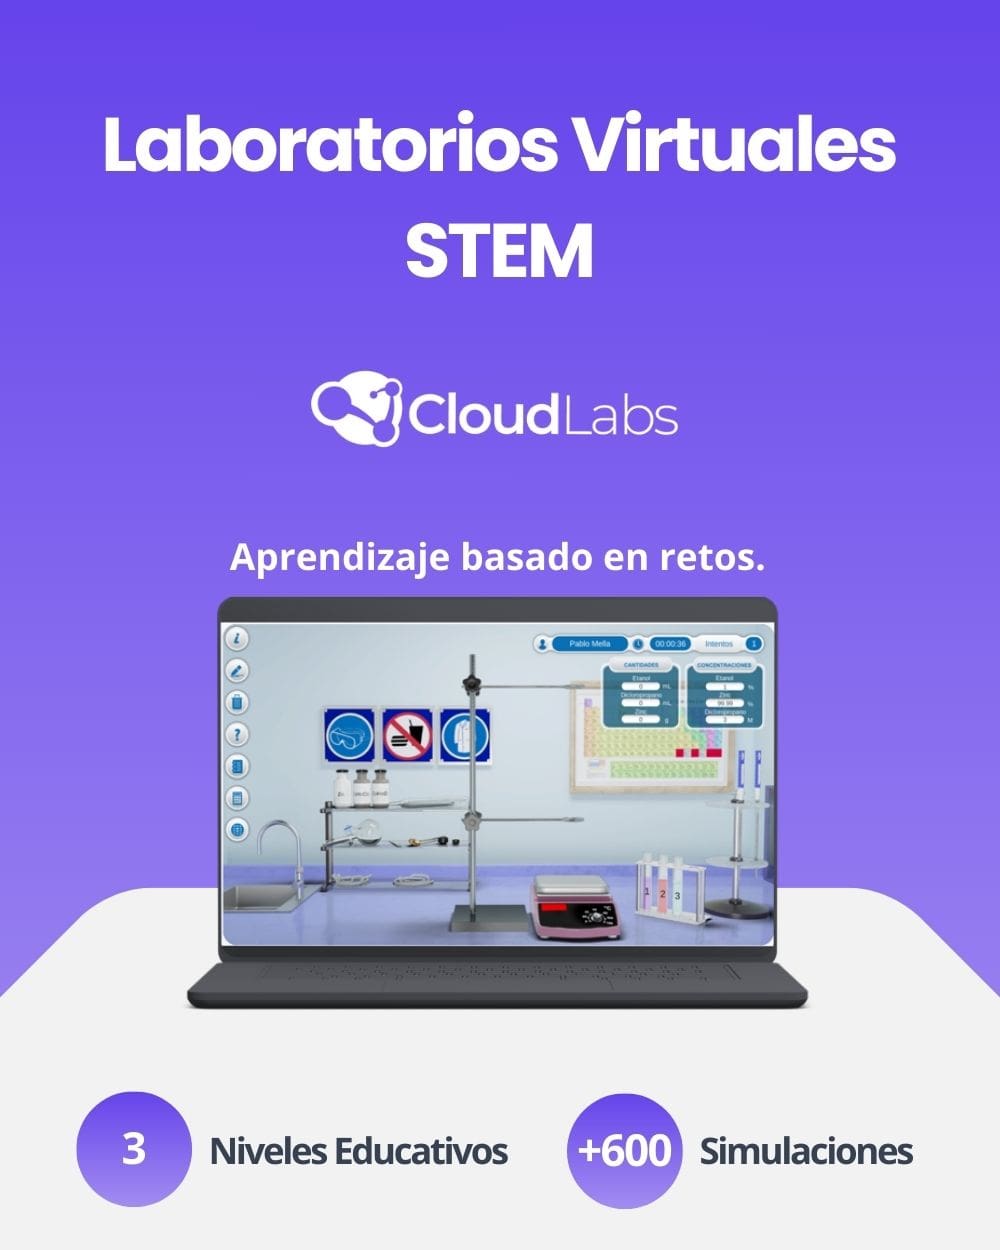 CloudLabs - Laboratorios Virtuales para Aprendizaje, Prodelab Partner Oficial